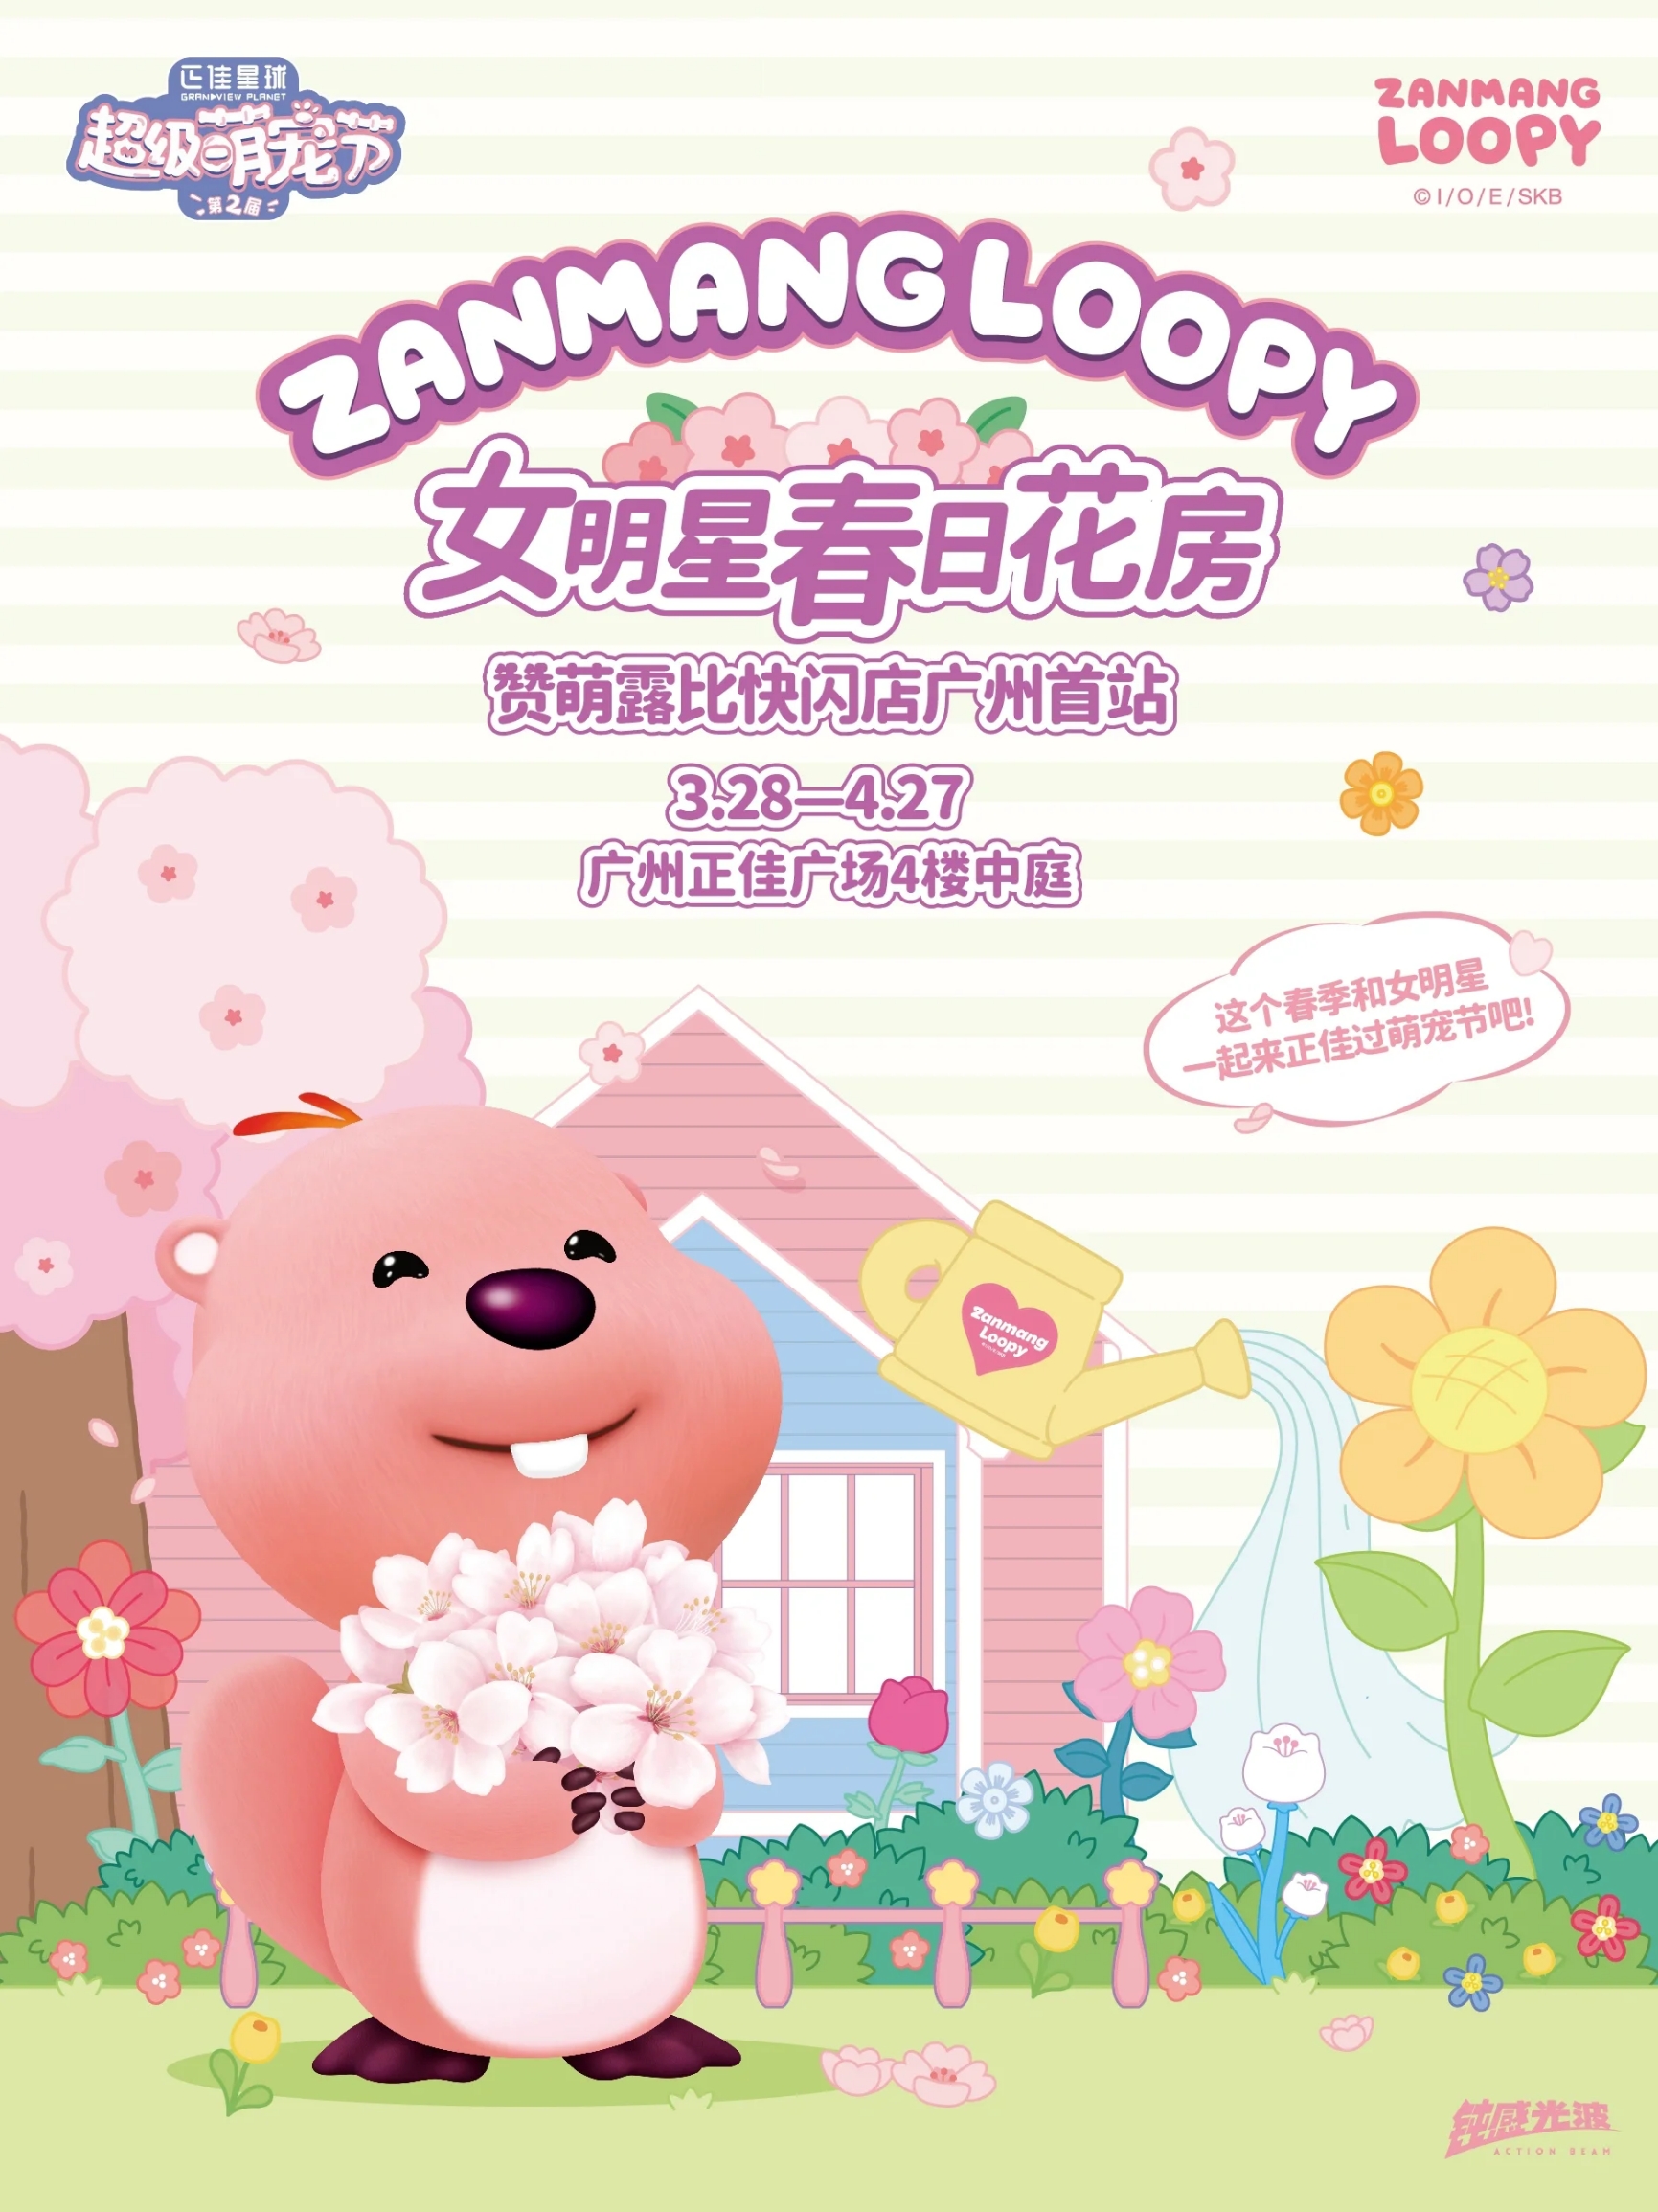 👉3.28-4.27 与ZANMANG LOOPY甜蜜相约 广州站更有全新女明星周边开售 一起打卡可